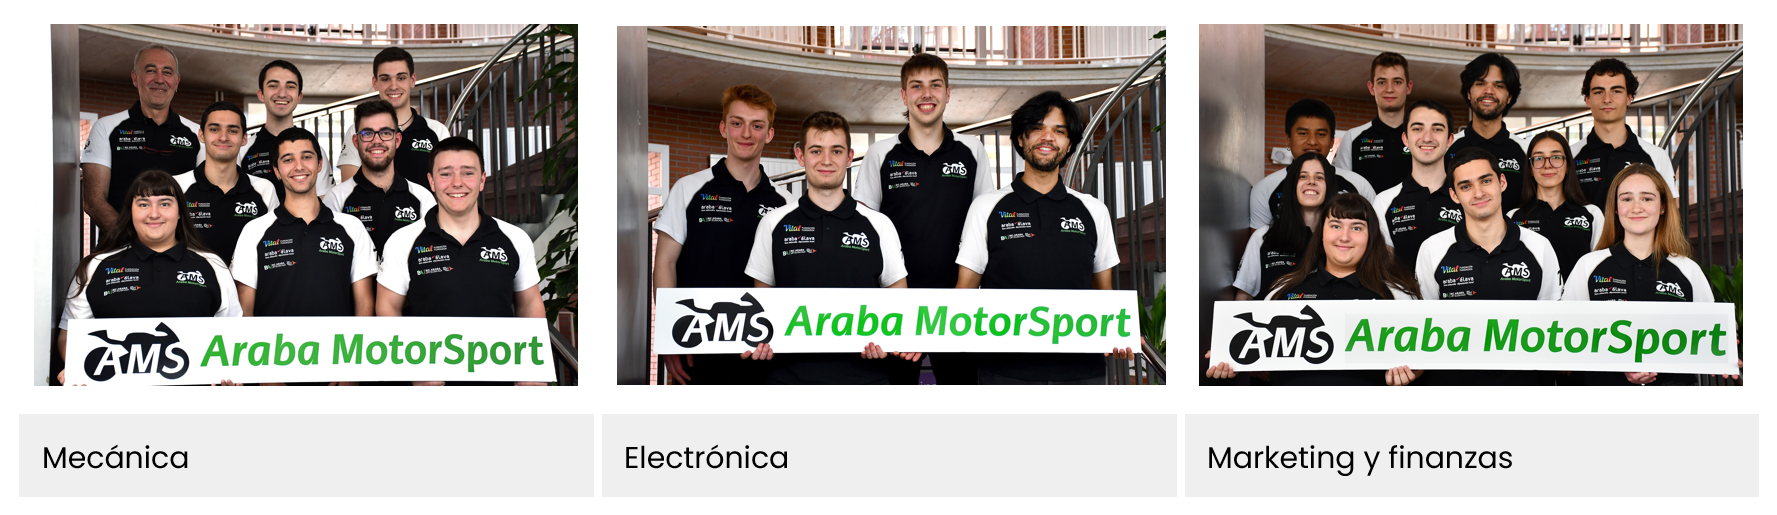 Departamentos de Araba Motor Sport